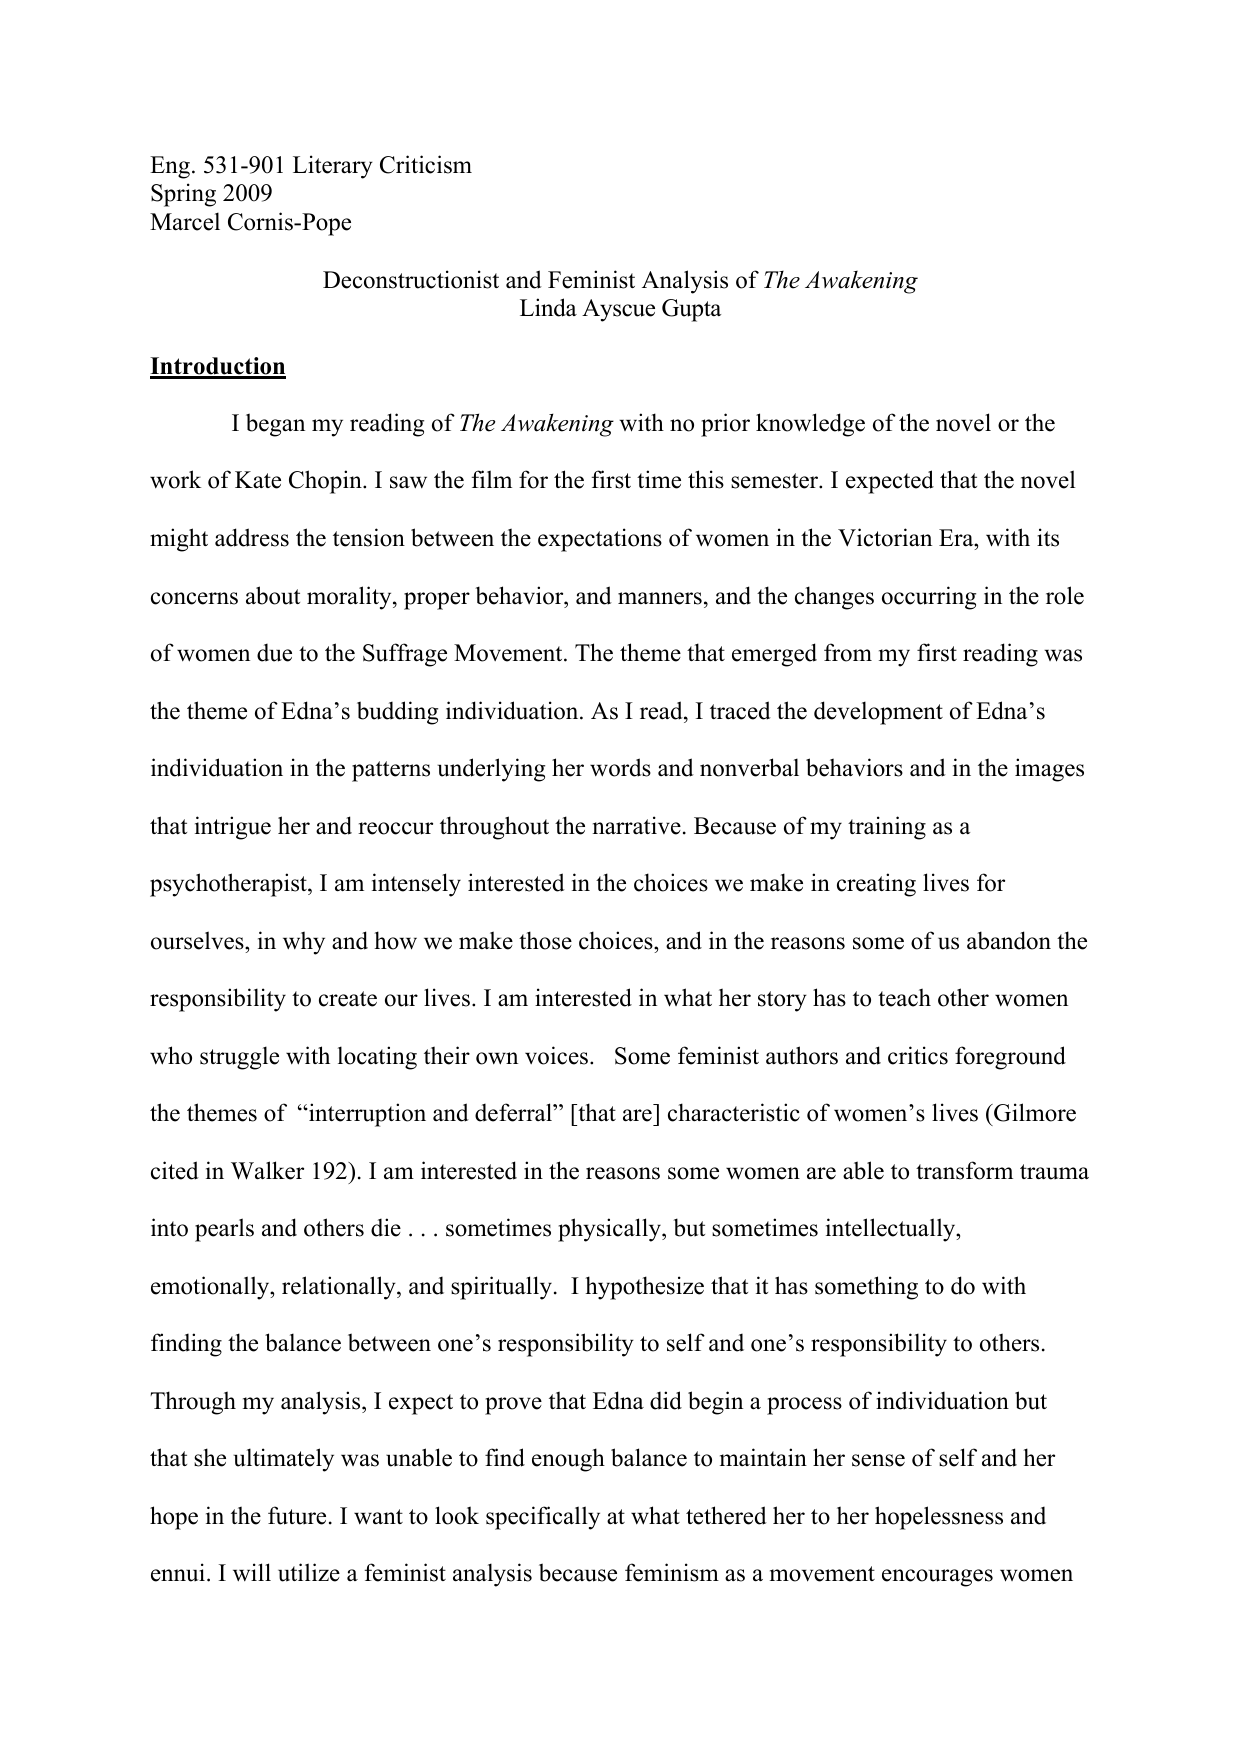 Princeton review essay grading